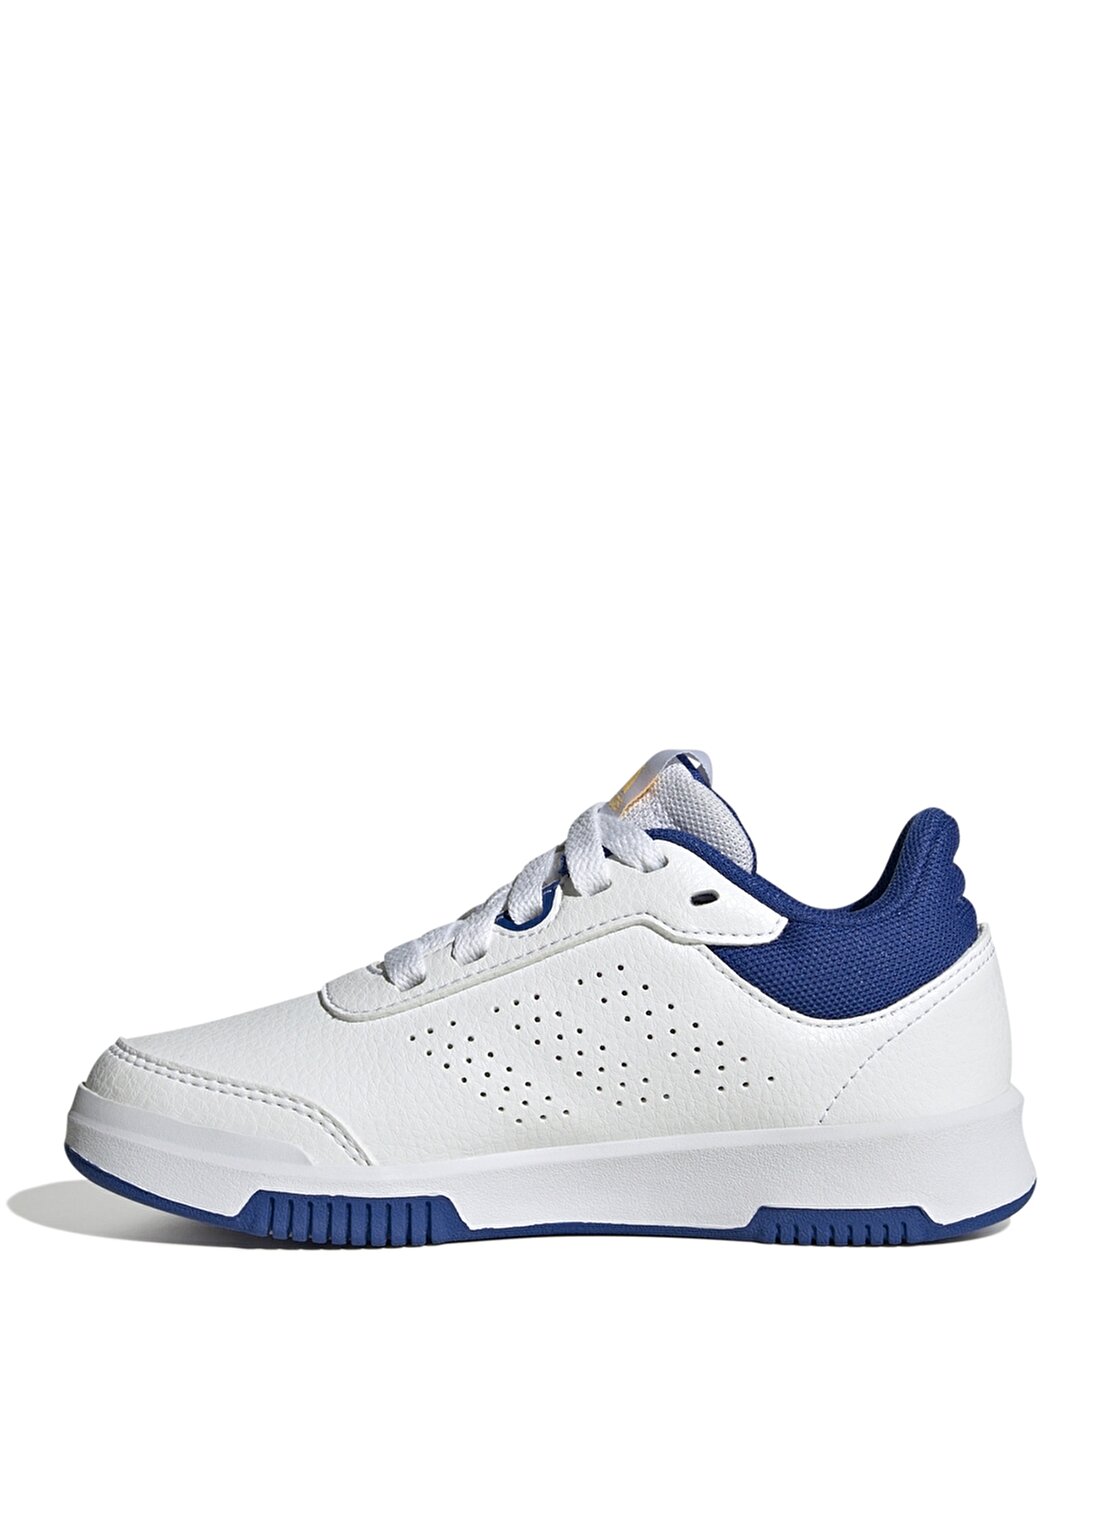 Adidas Beyaz Erkek Çocuk Yürüyüş Ayakkabısı IF8669-Tensaur Sport 2.0 K